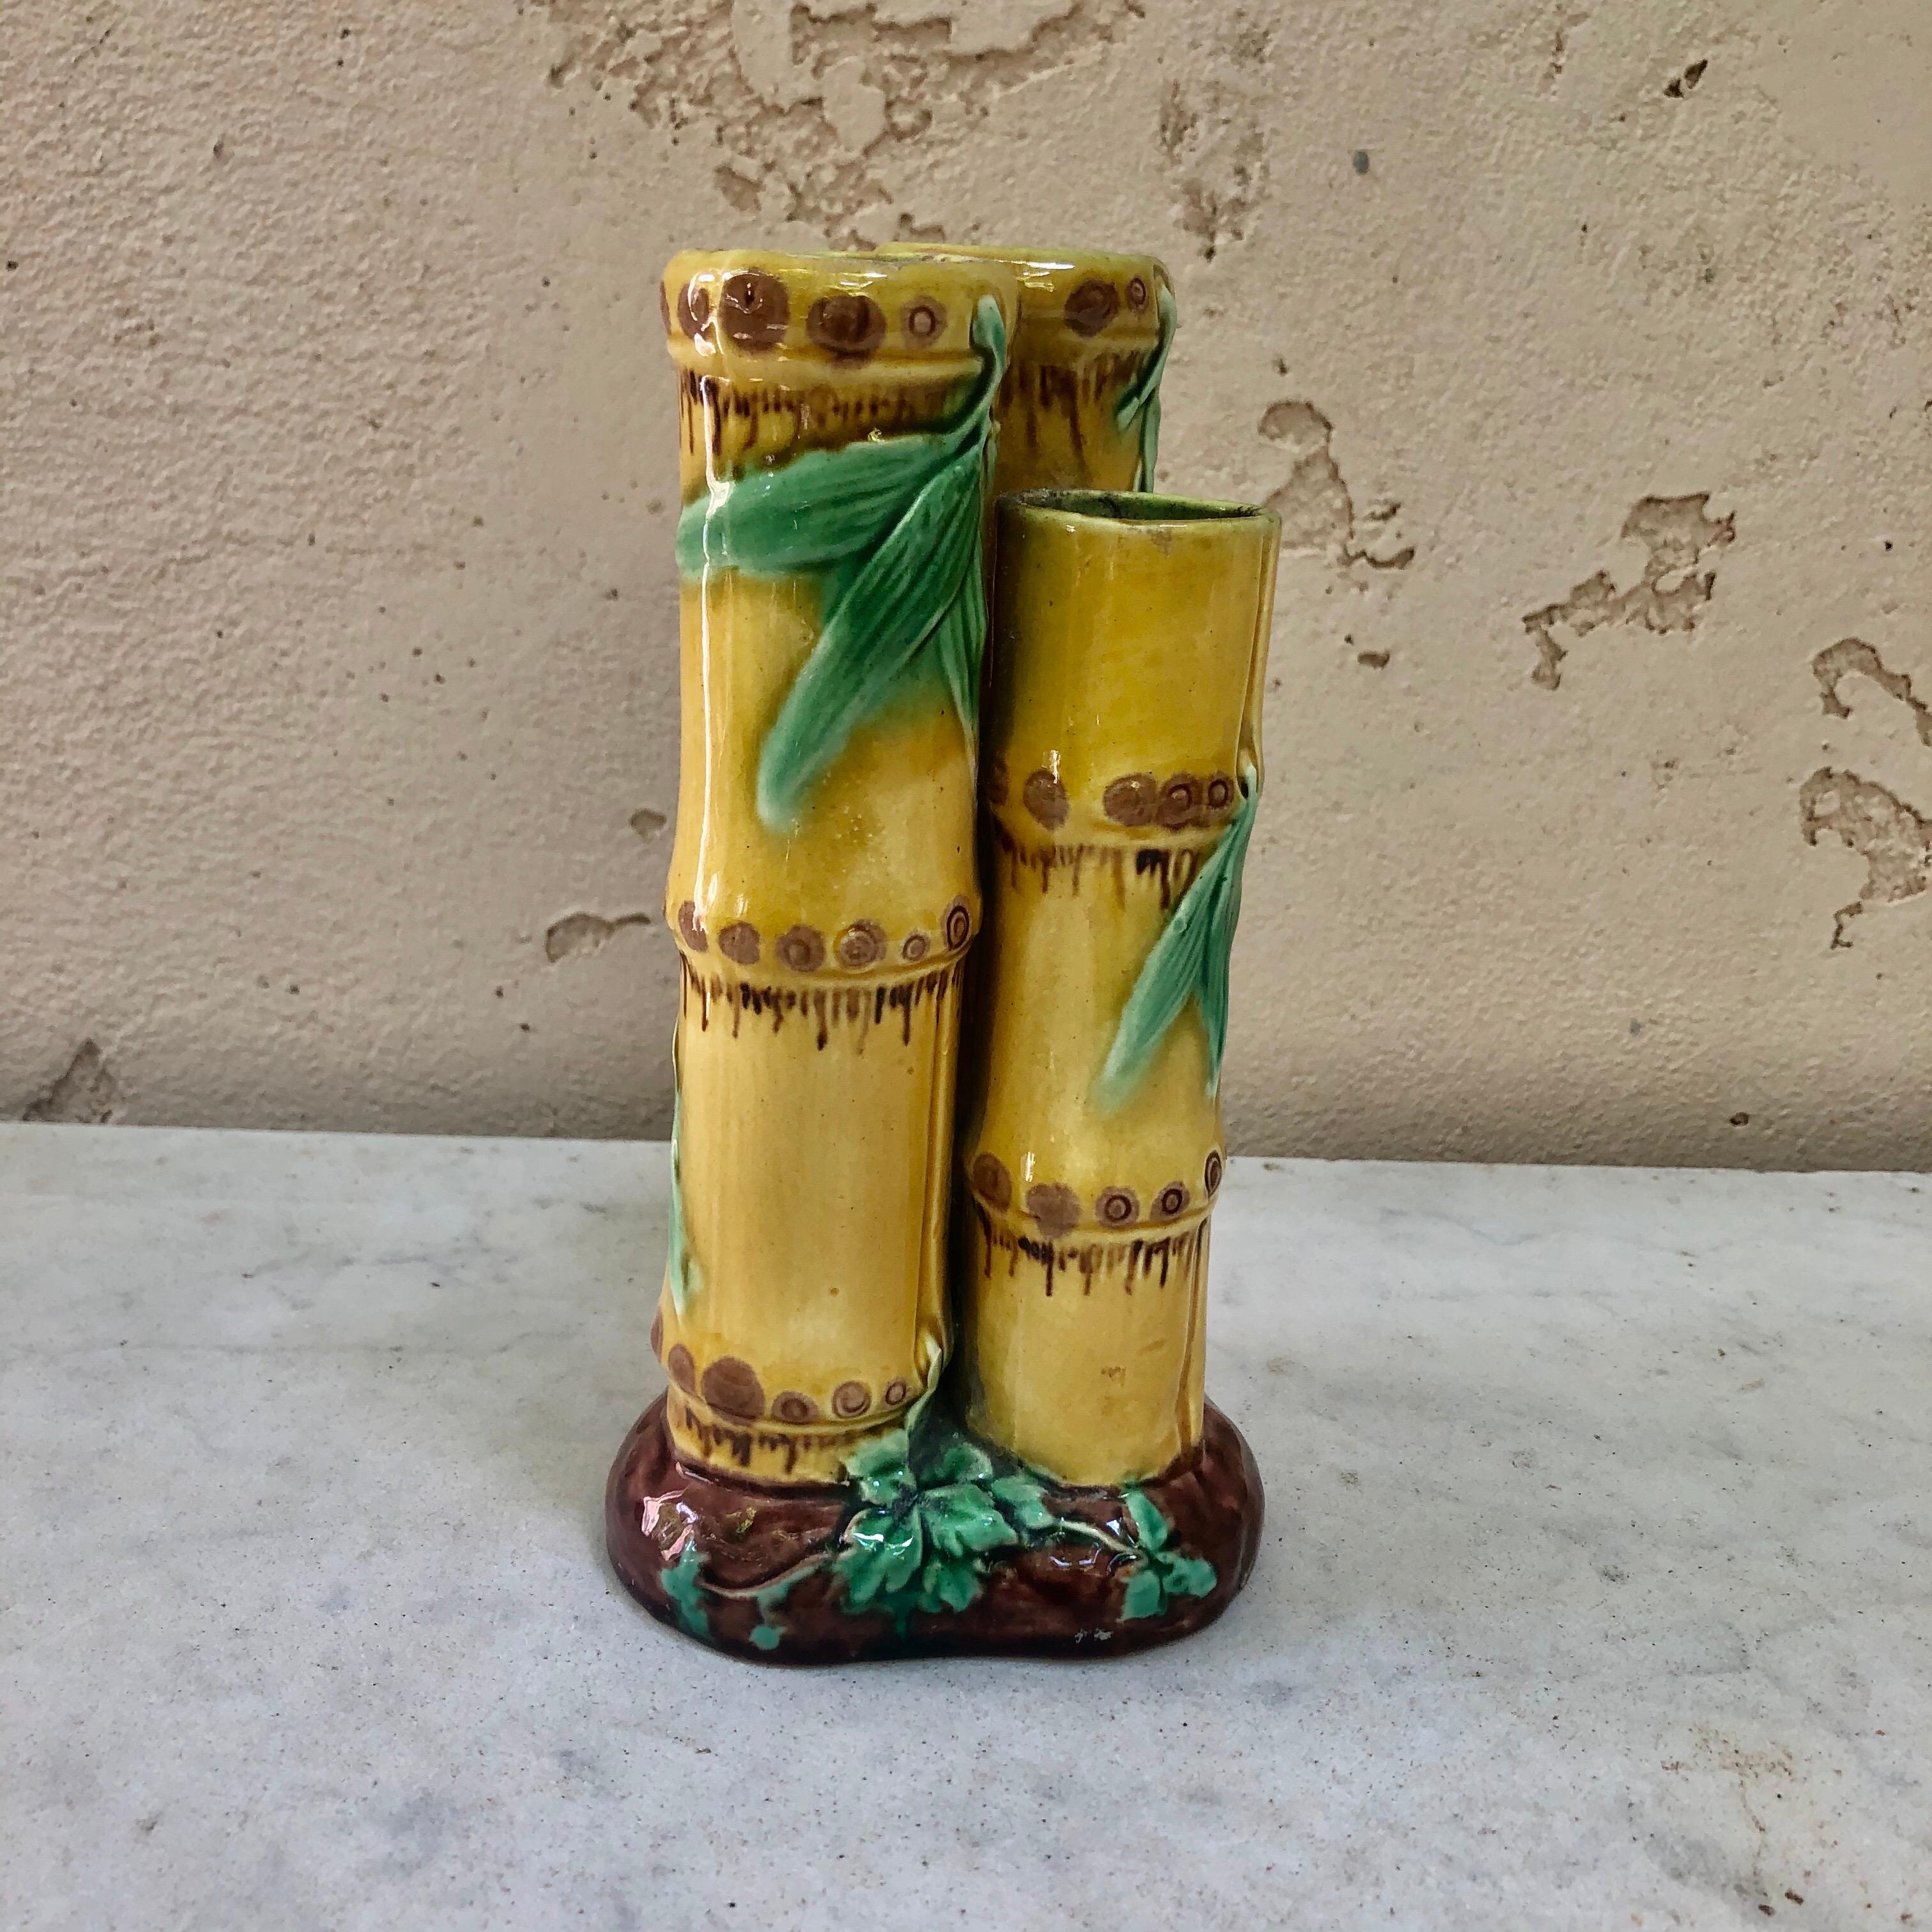 Seltene kleine Vase Minton Majolica Posy in Form von drei aufrechten gelben Bambusrohren, die alle auf einem erdigen Grund stehen.